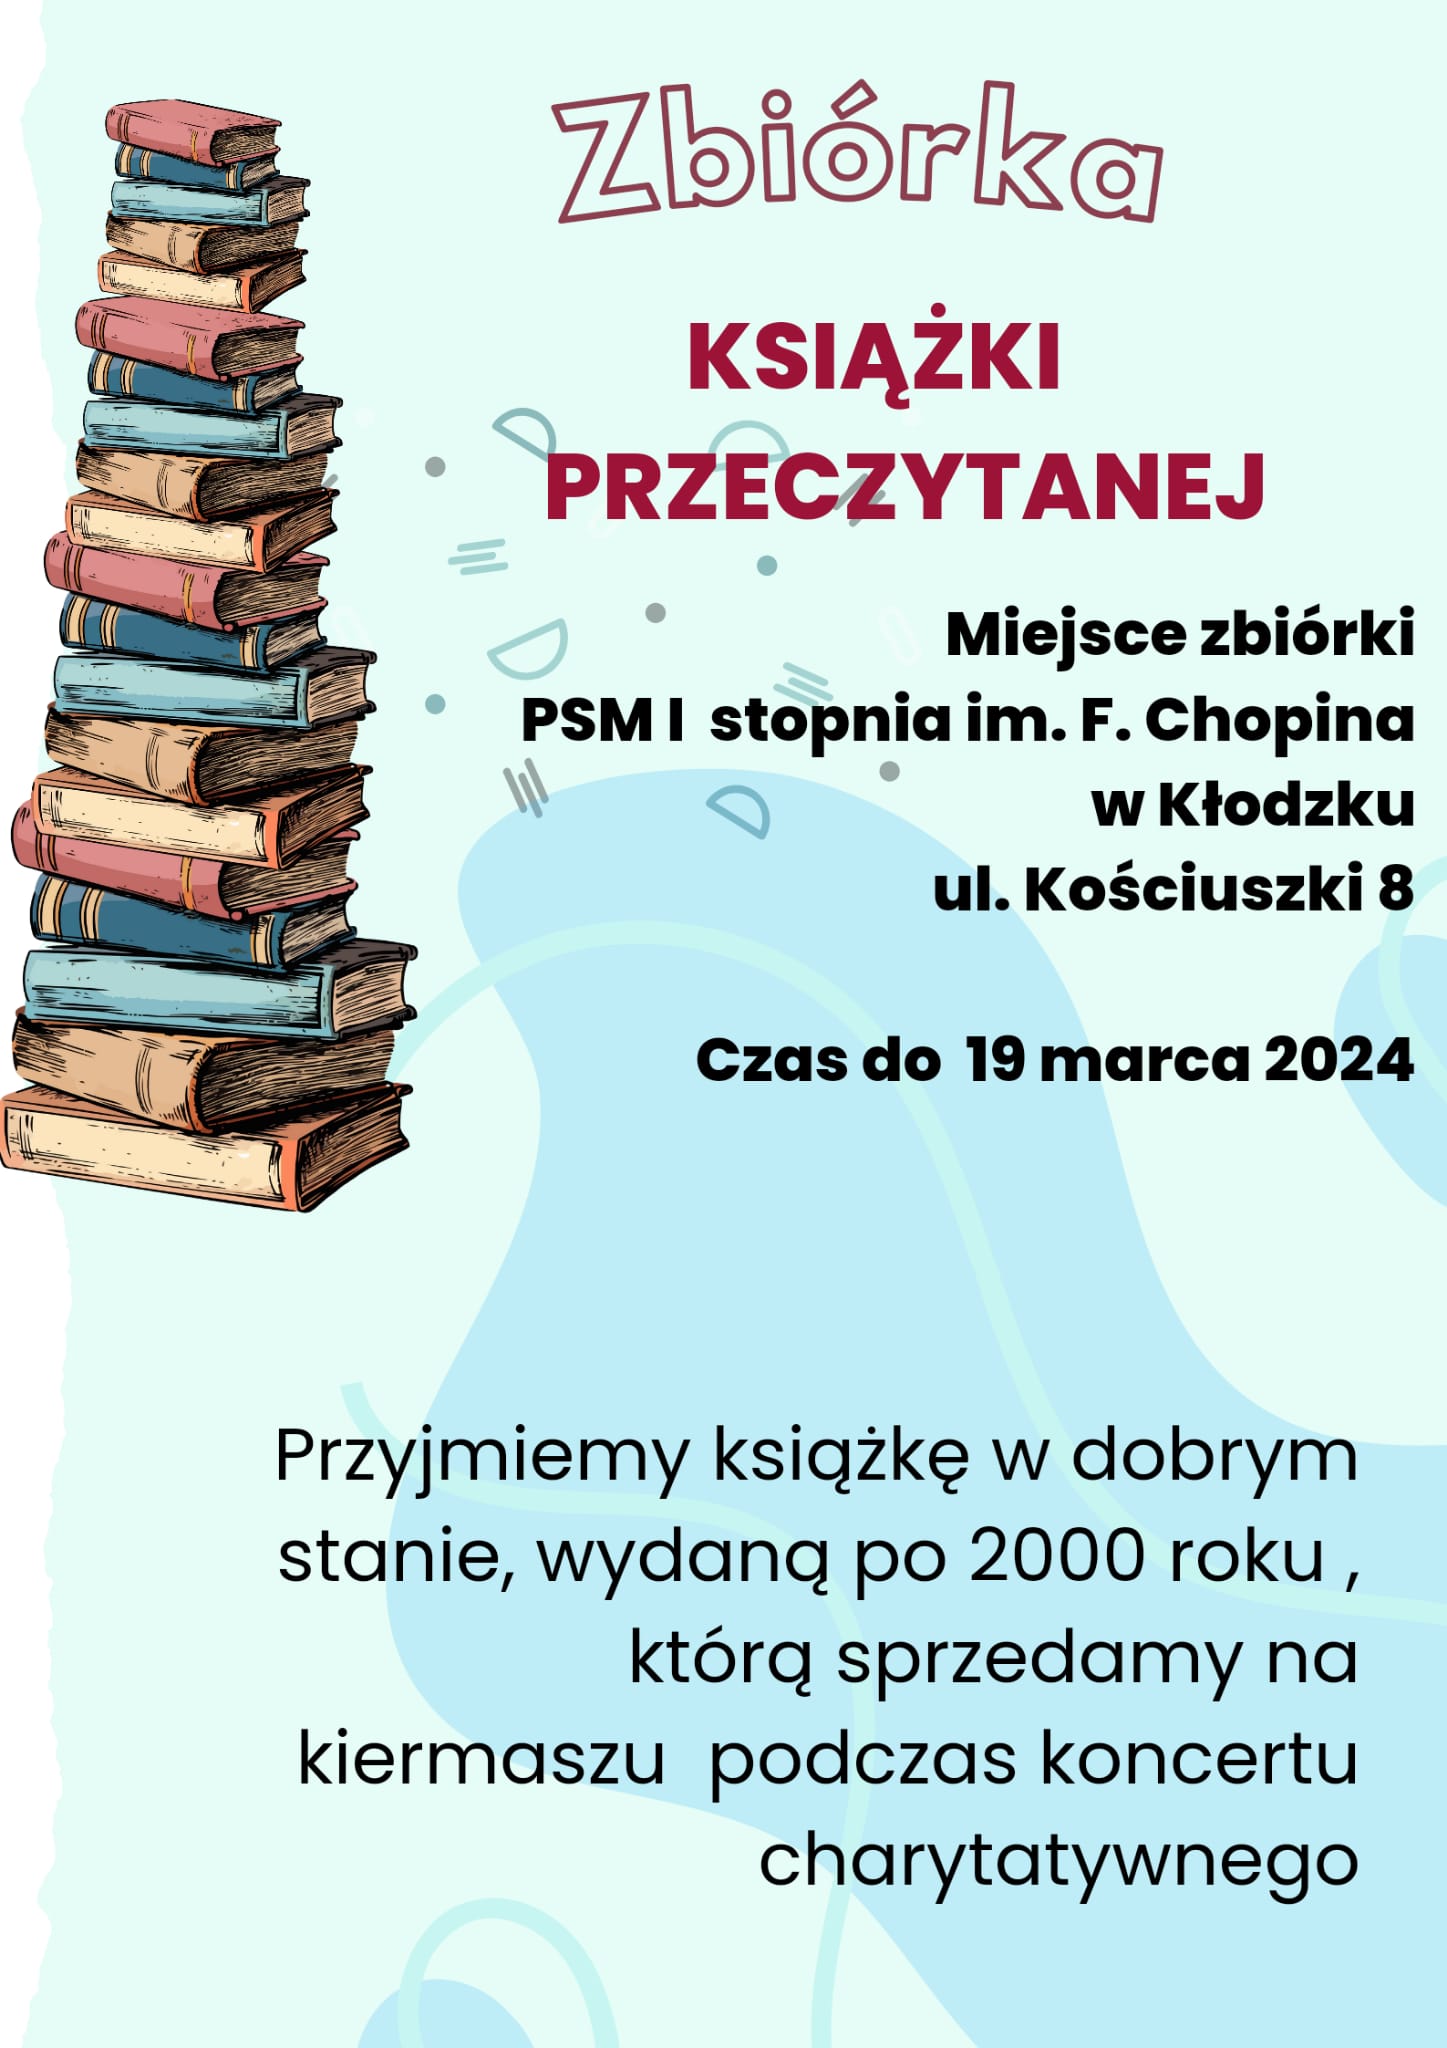 Plakat na kolorowym tle wraz z grafiką książek oraz informacją tekstową na temat zbiórki książek na koncert charytatywny do 19 marca 2024